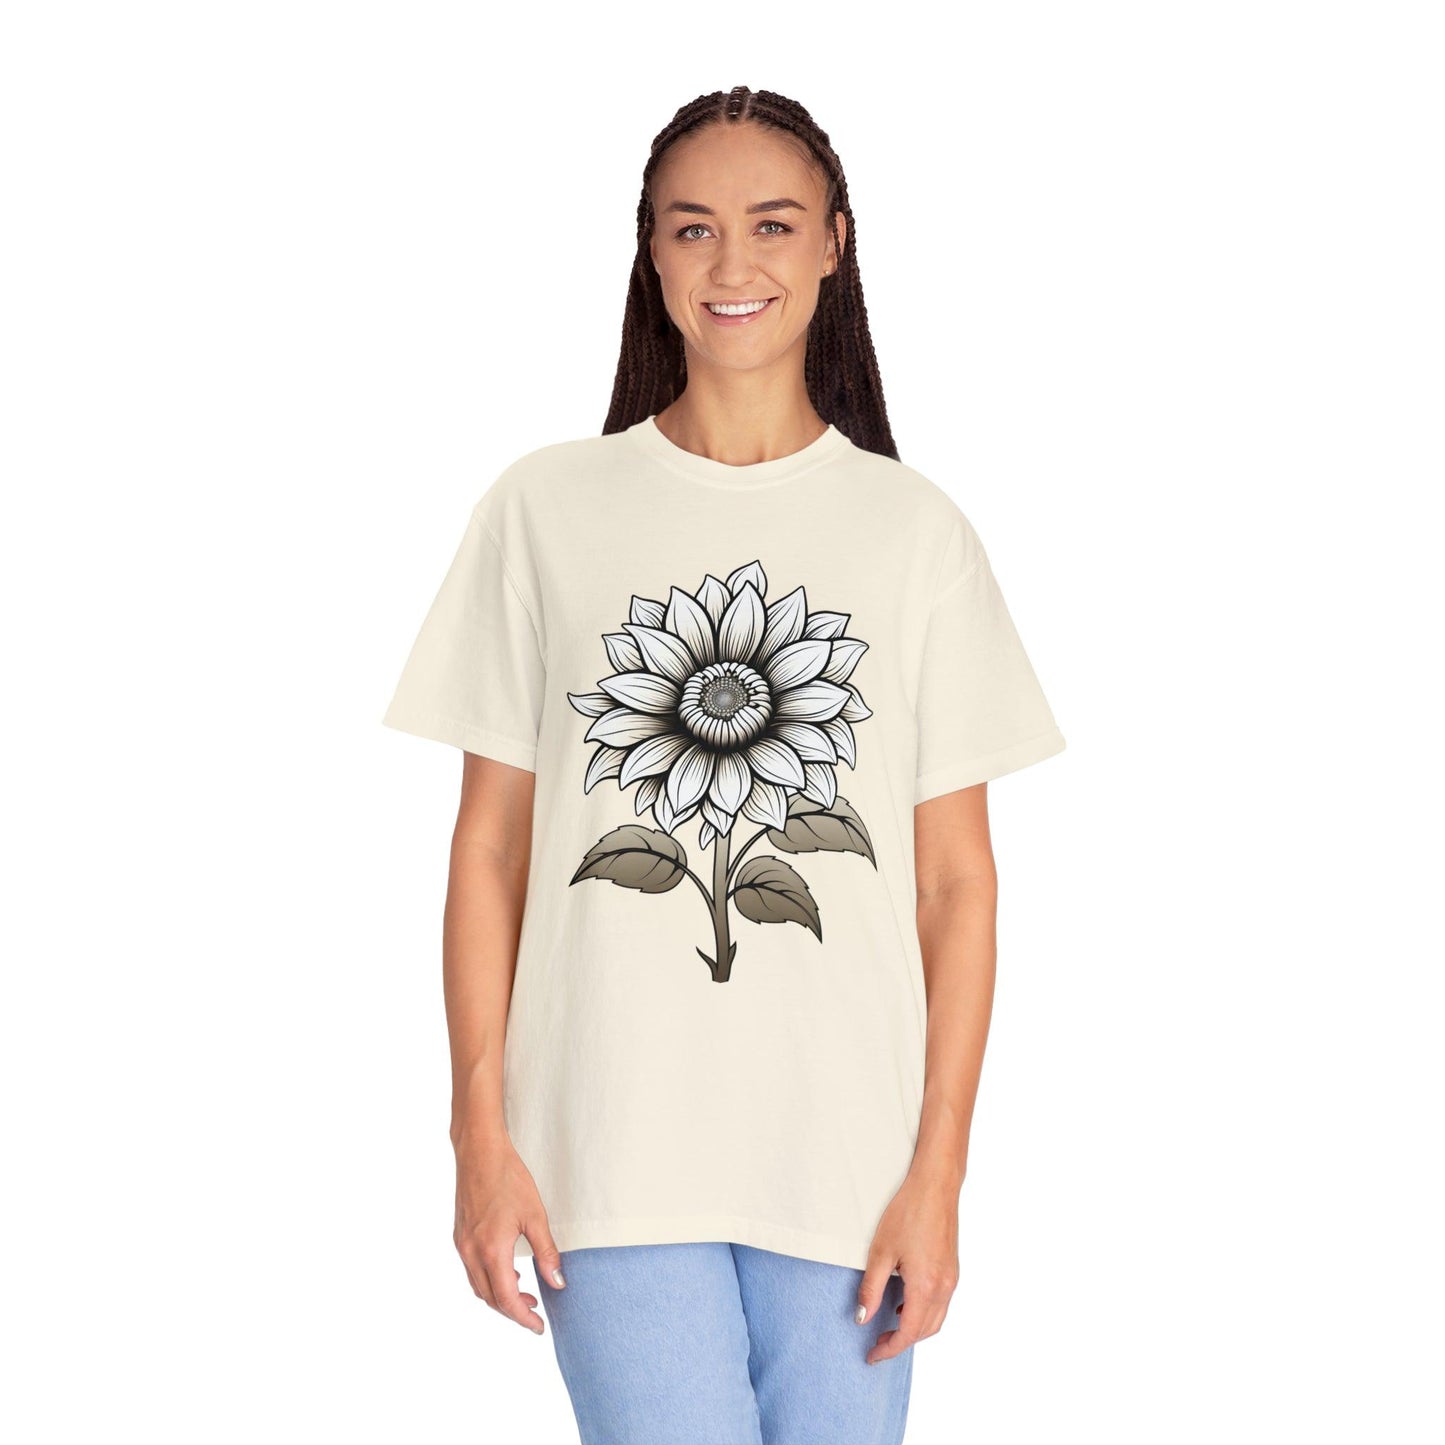 Sunflower Shirt Vintage Flower Shirt Aesthetic, Floral Graphic Tee Floral Shirt Flower T-shirt, Wild Flower Shirt Gift For Her